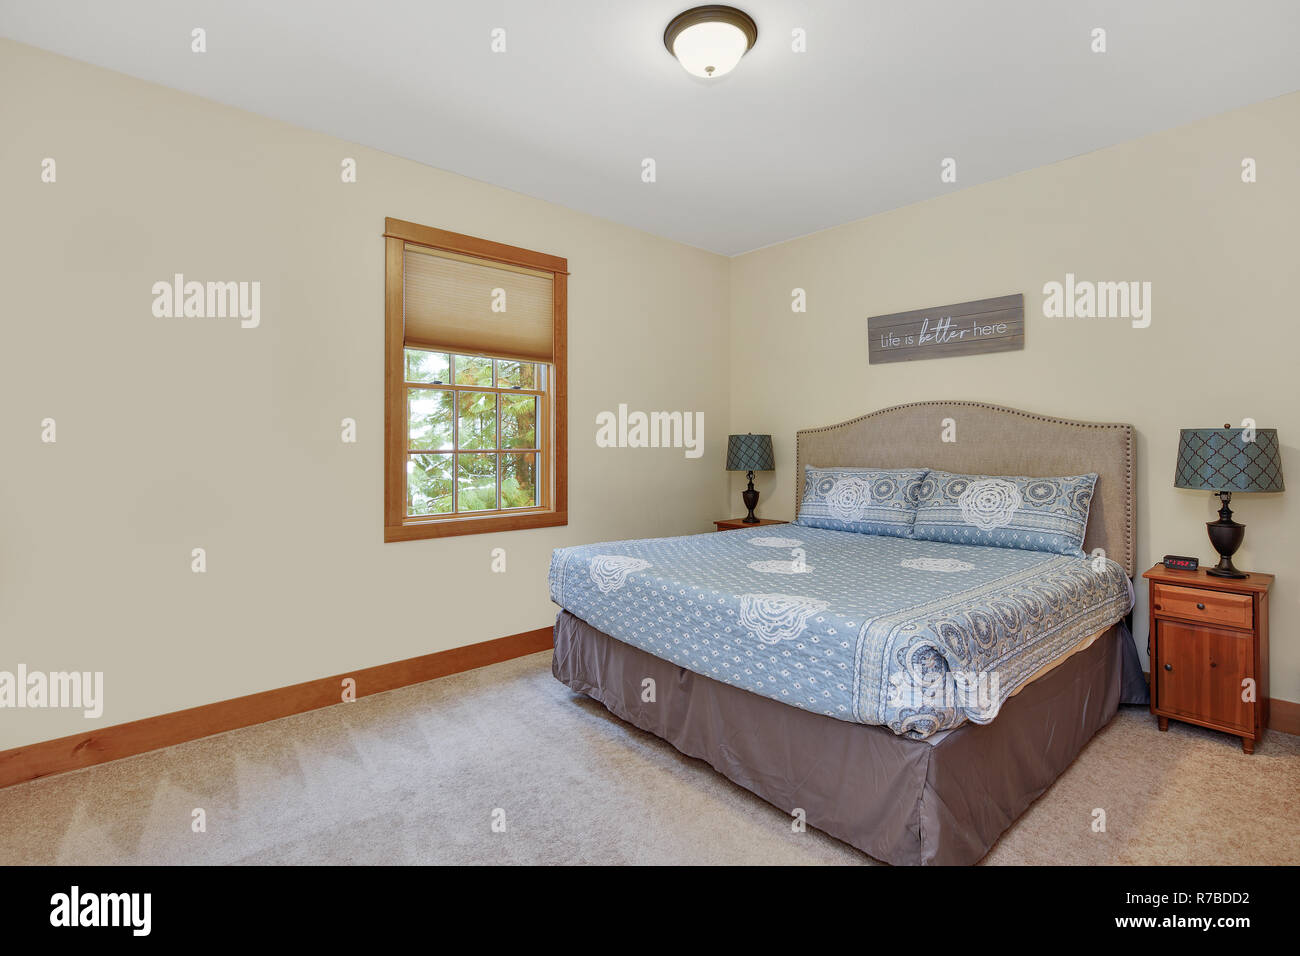 Schönes Zimmer mit Bettwäsche Kopfteil mit nailhead Verkleidung auf King  Bett und weichen cremefarbenen Wänden Stockfotografie - Alamy